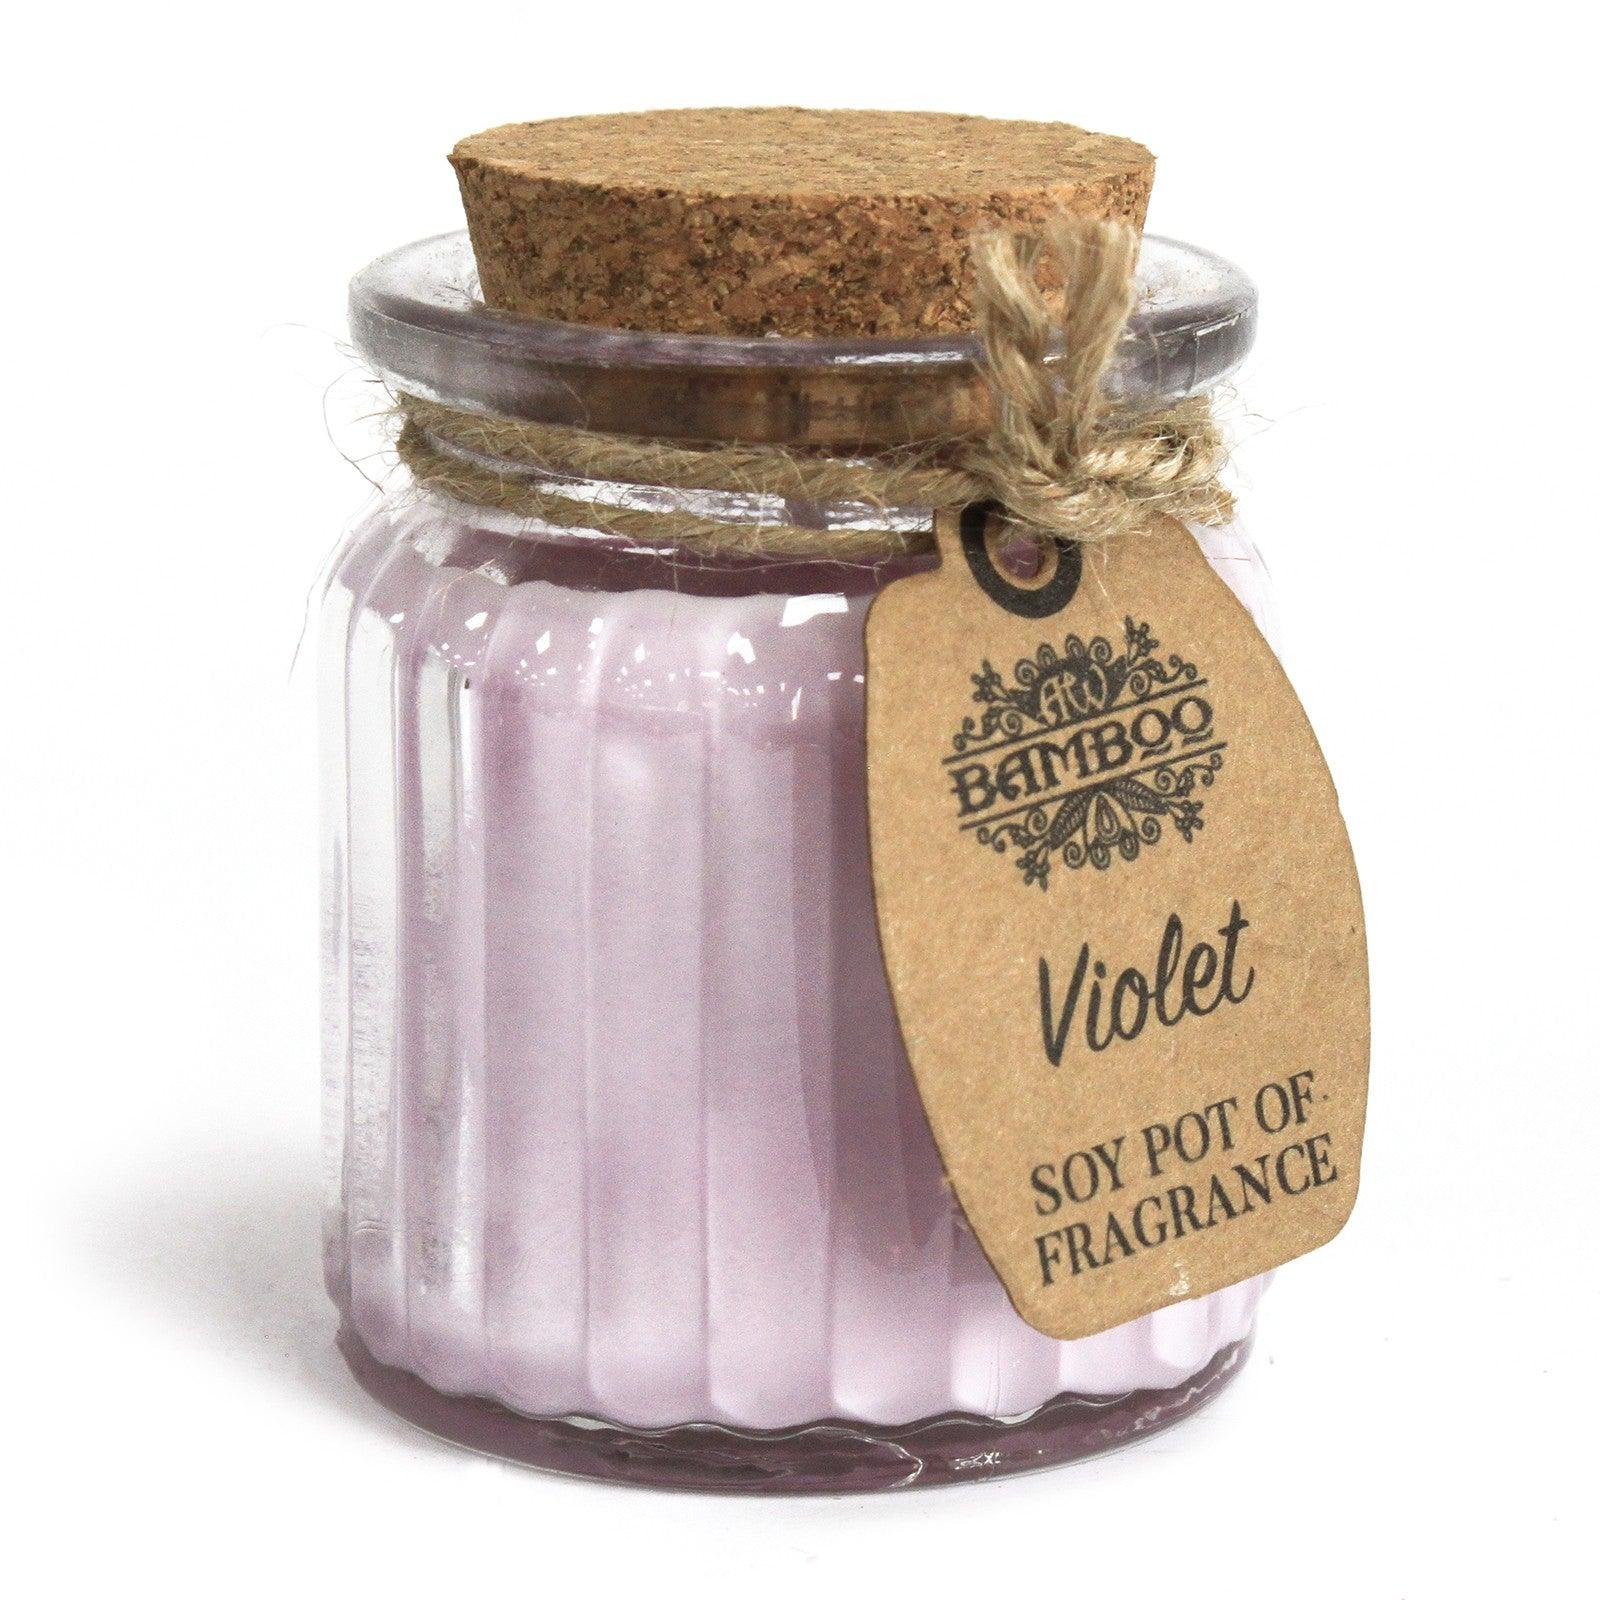 Violet Soy Pot of Fragrance Candles - DuvetDay.co.uk